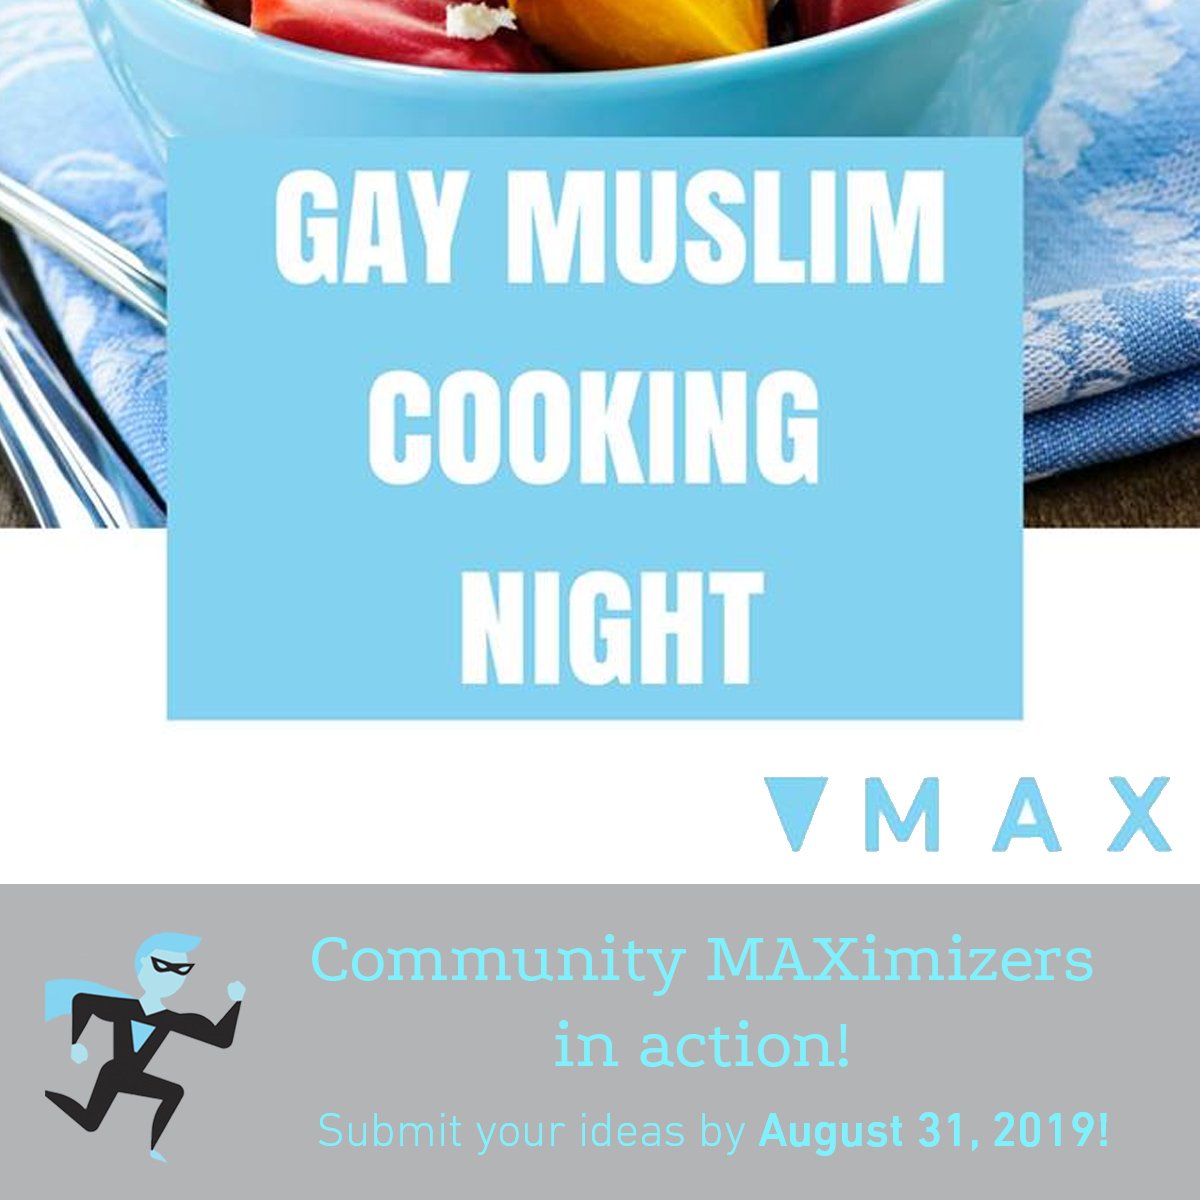 Soirée de cuisine des musulmans gais